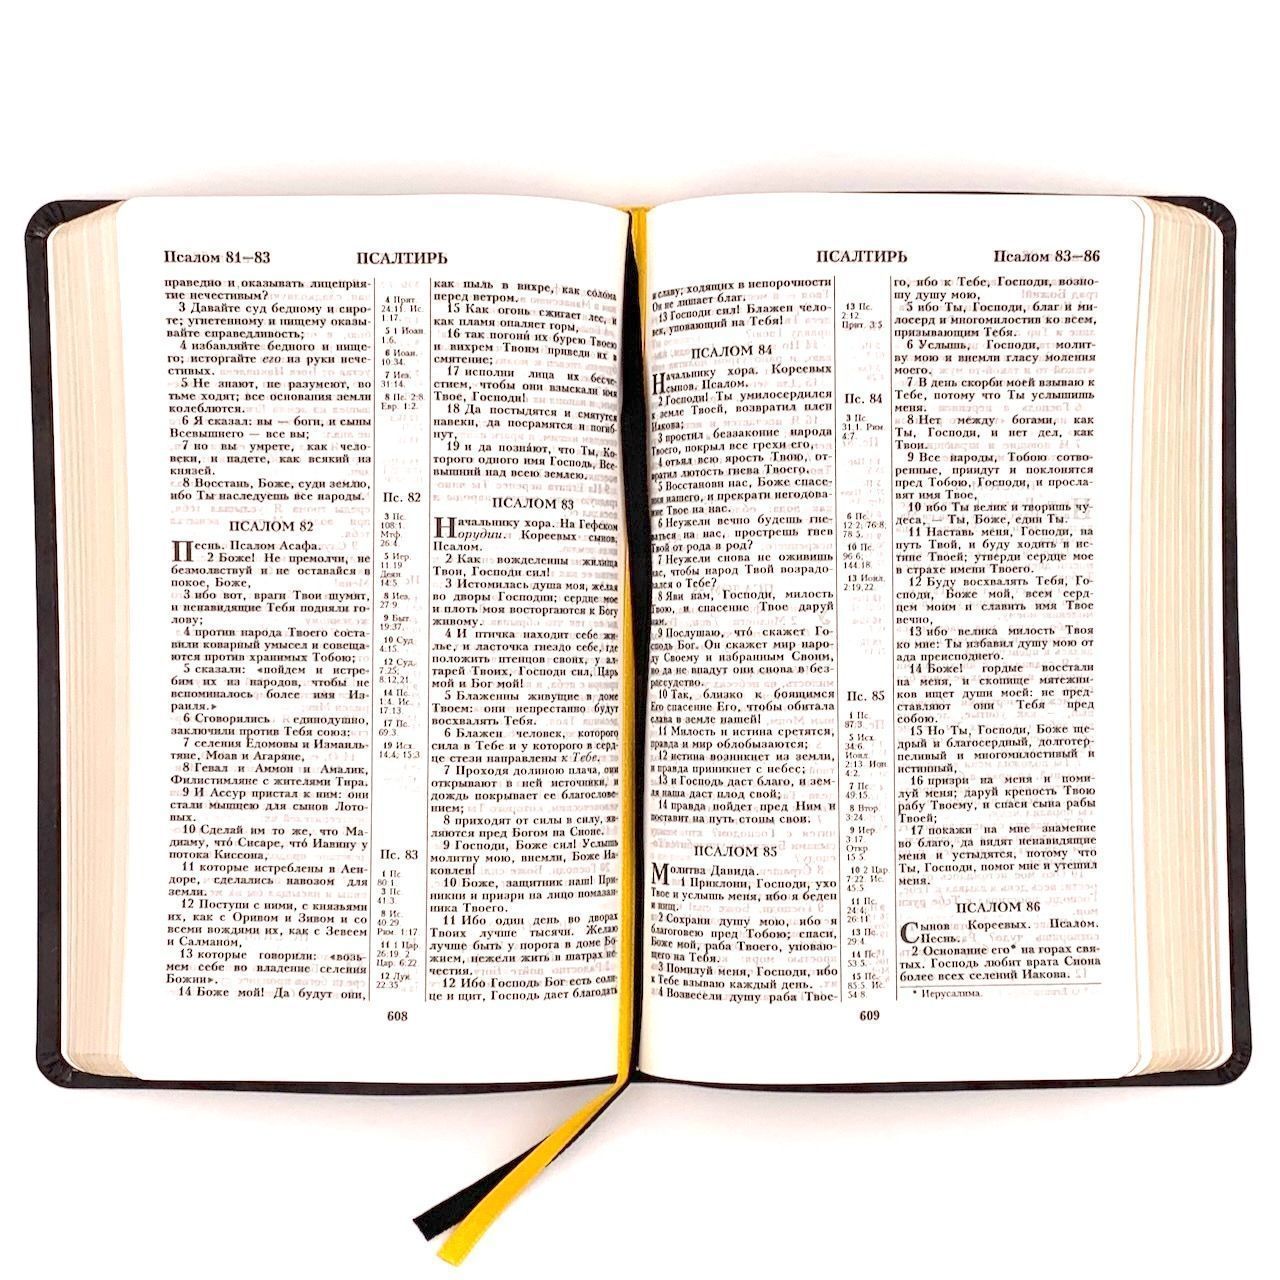 Библия 055 код F1 дизайн "термо рамка барокко", переплет из искусственной кожи, цвет темно-серый матовый, 140*215 мм